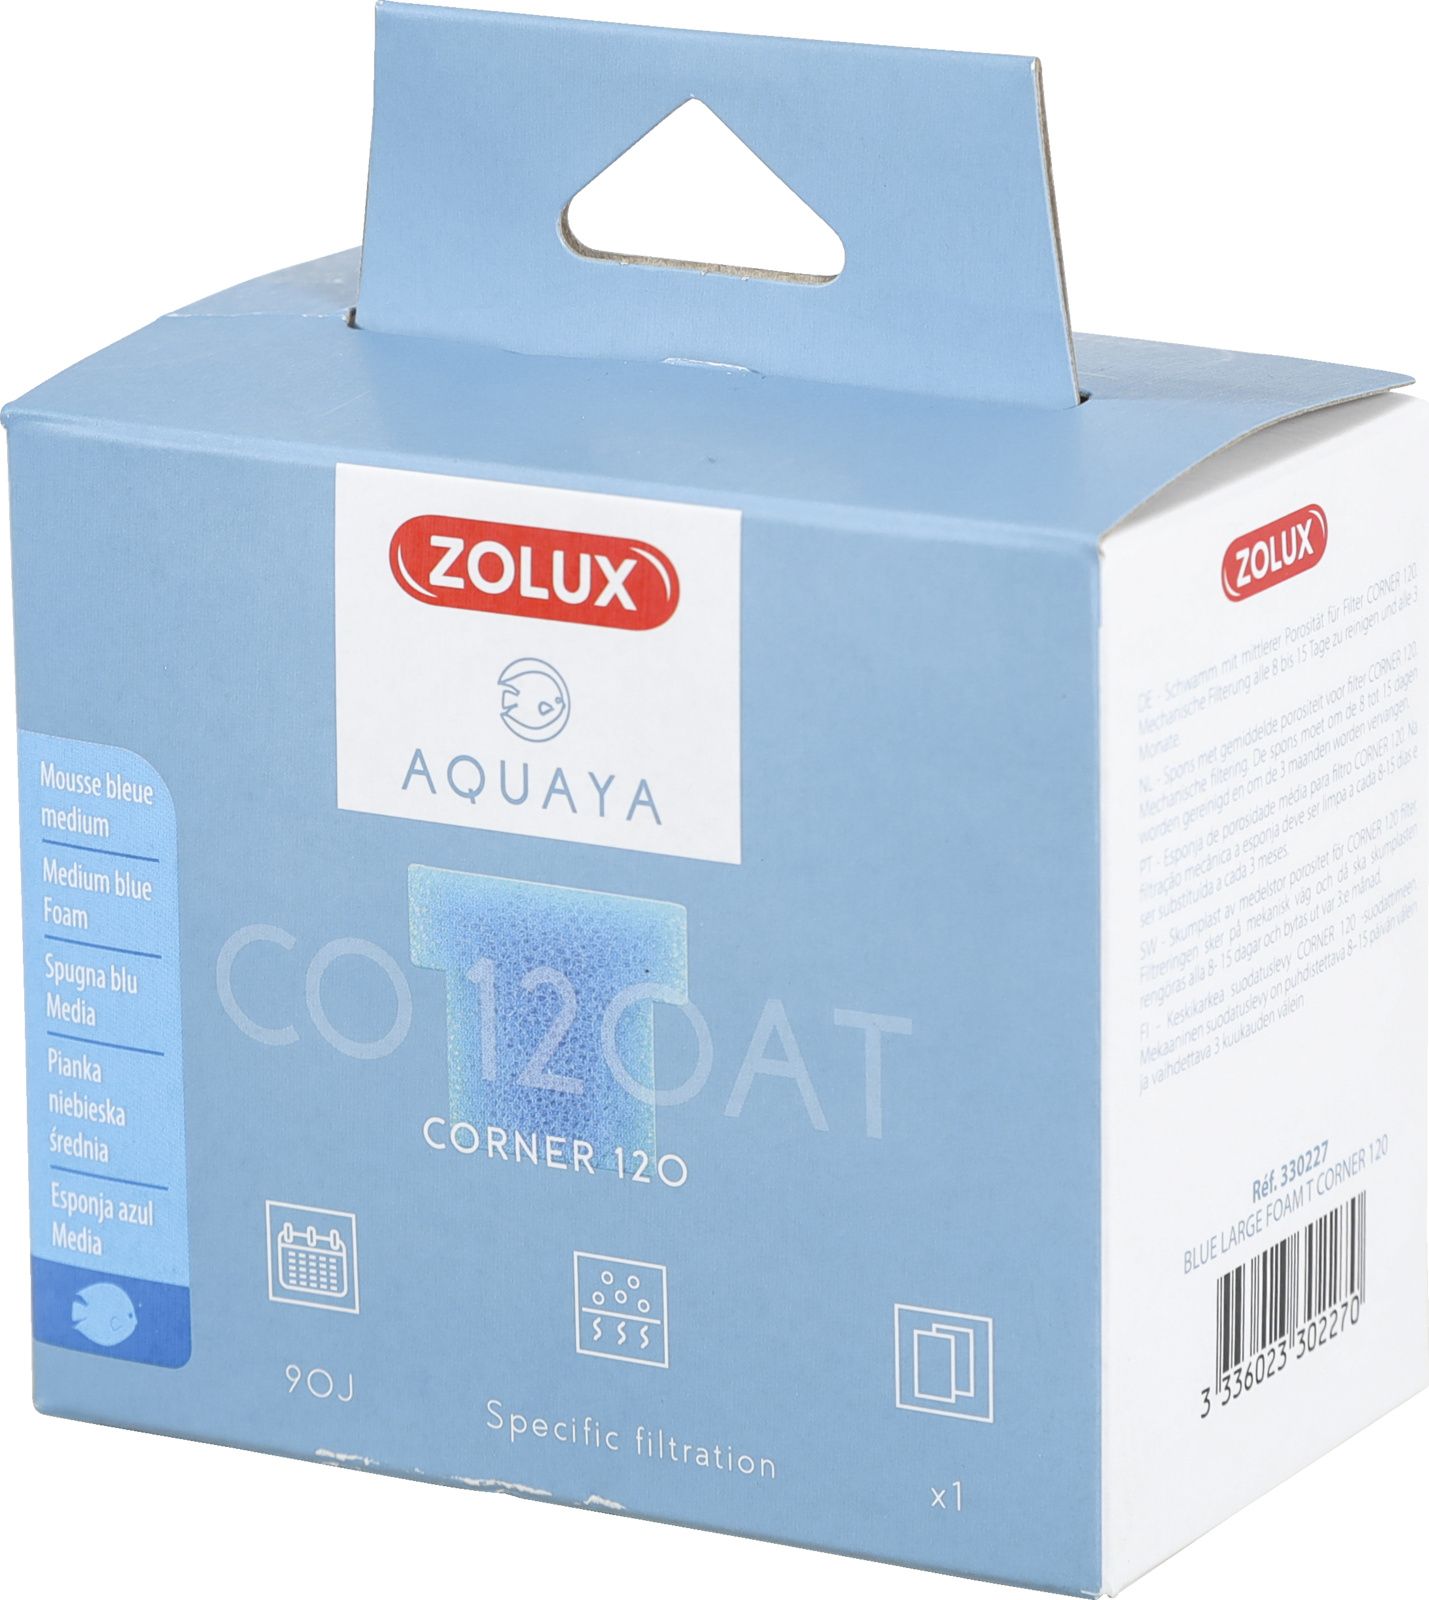 Zolux AQUAYA Wklad gabka Blue Large Foam T Corner 120 7544714 (3336023302270) akvārija filtrs